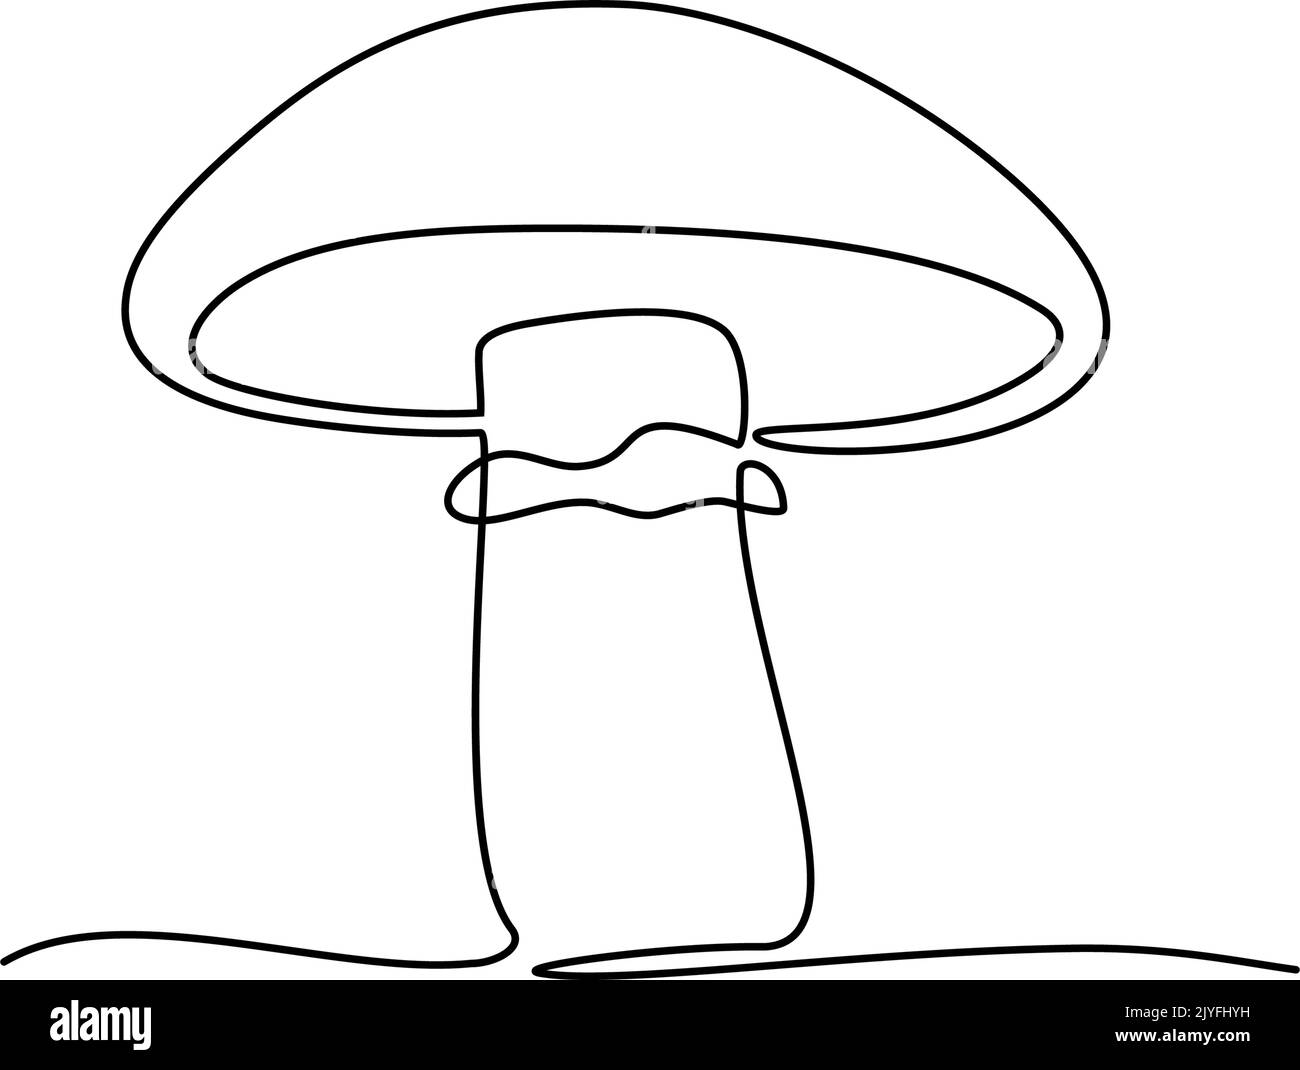 Dessin continu d'une ligne de champignon. Illustration vectorielle Illustration de Vecteur